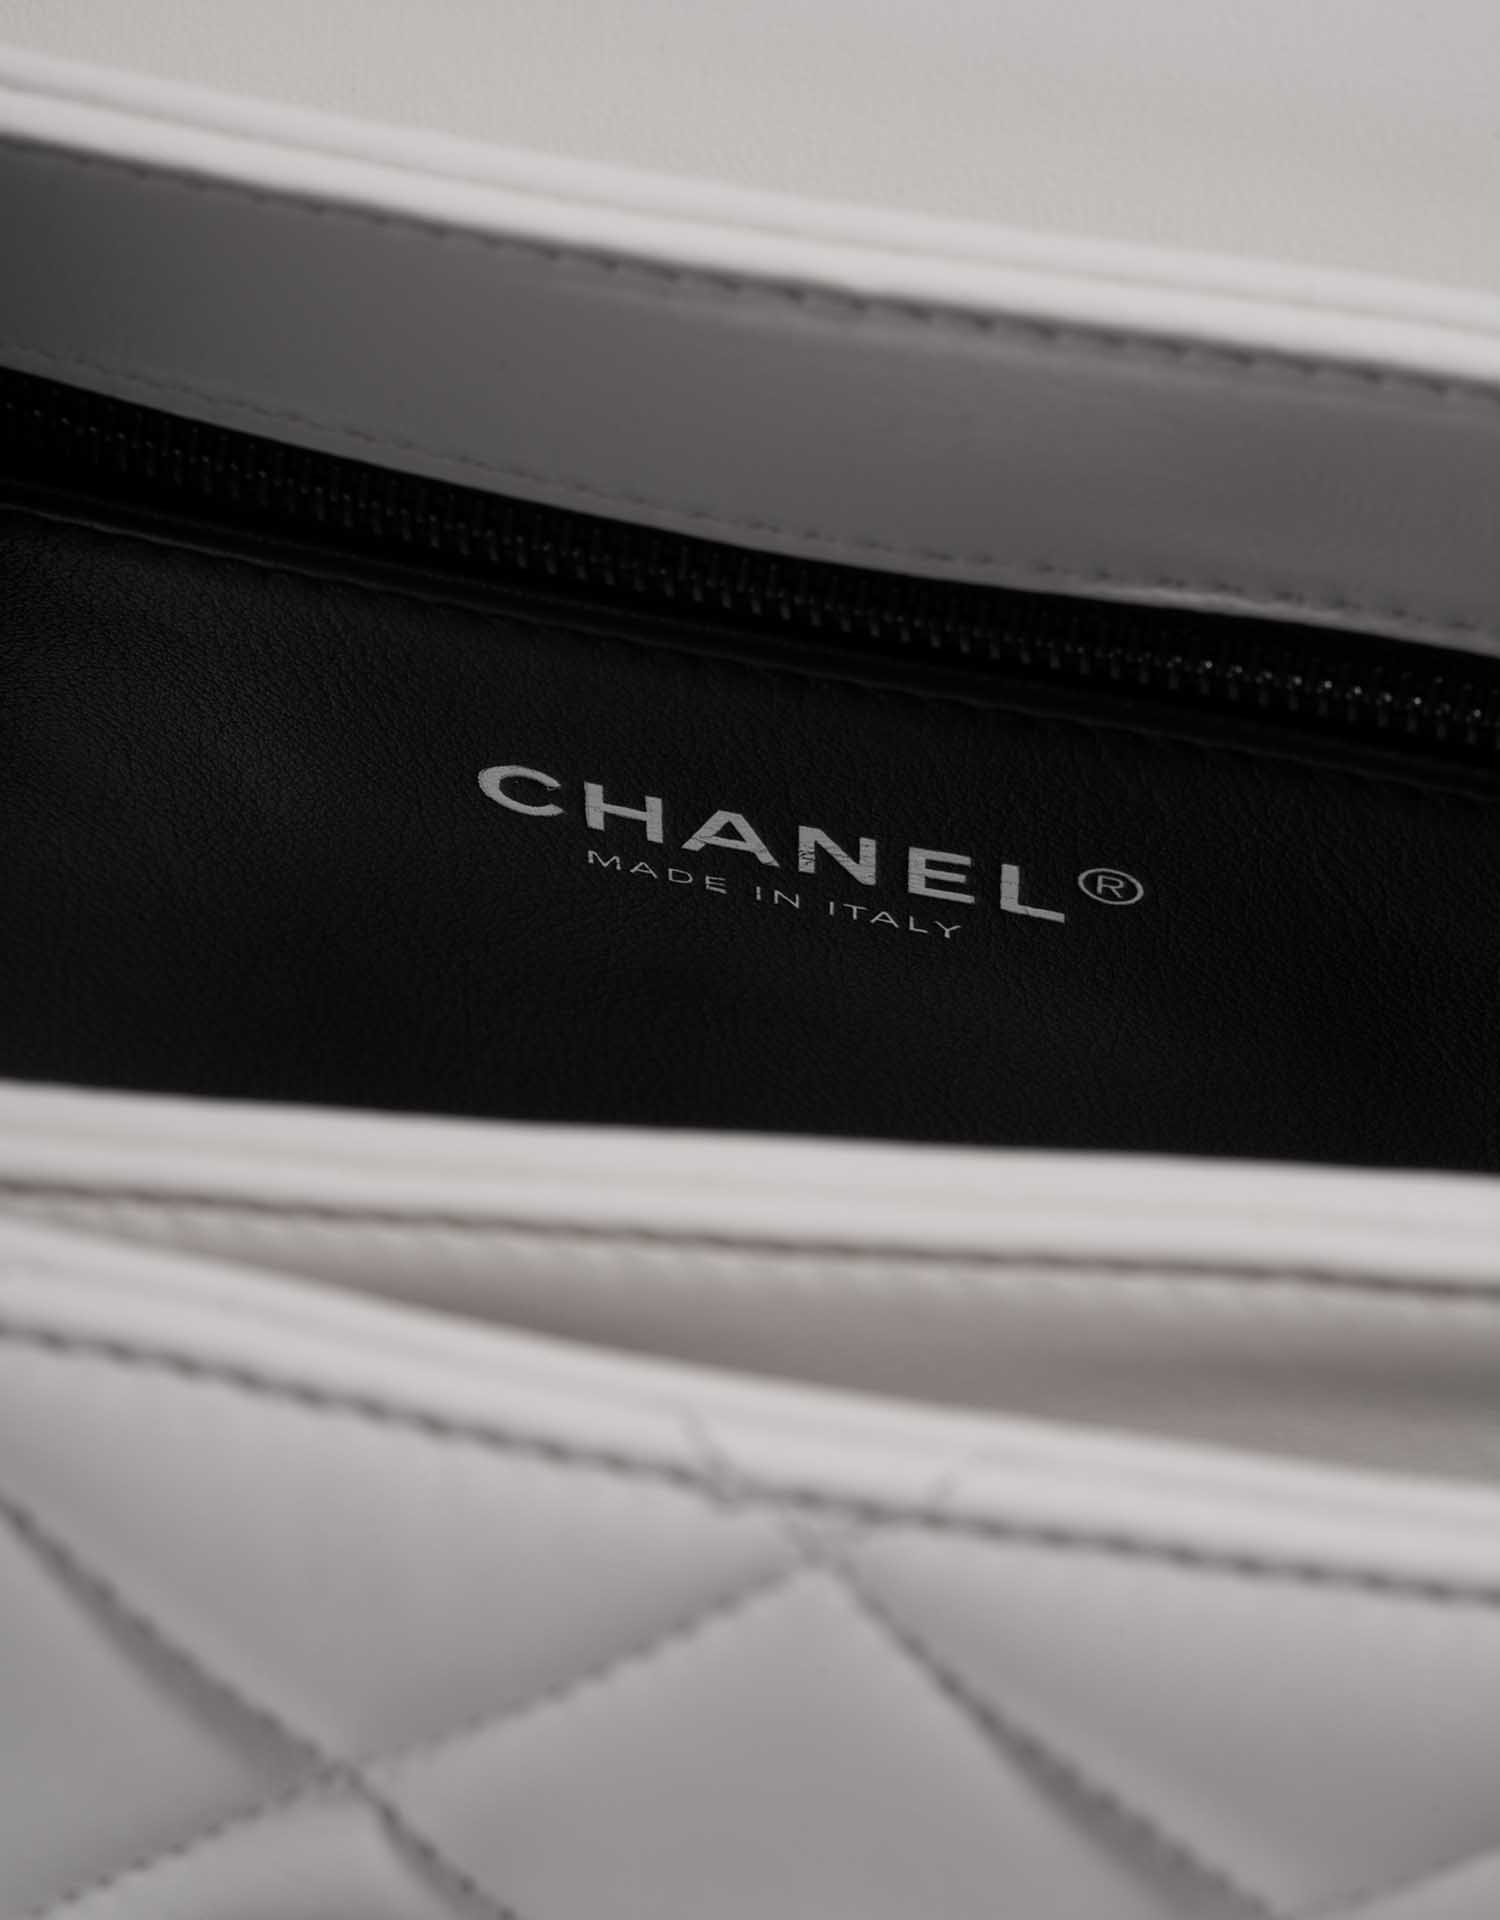 Chanel TimelessHandle Small White Logo | Verkaufen Sie Ihre Designer-Tasche auf Saclab.com